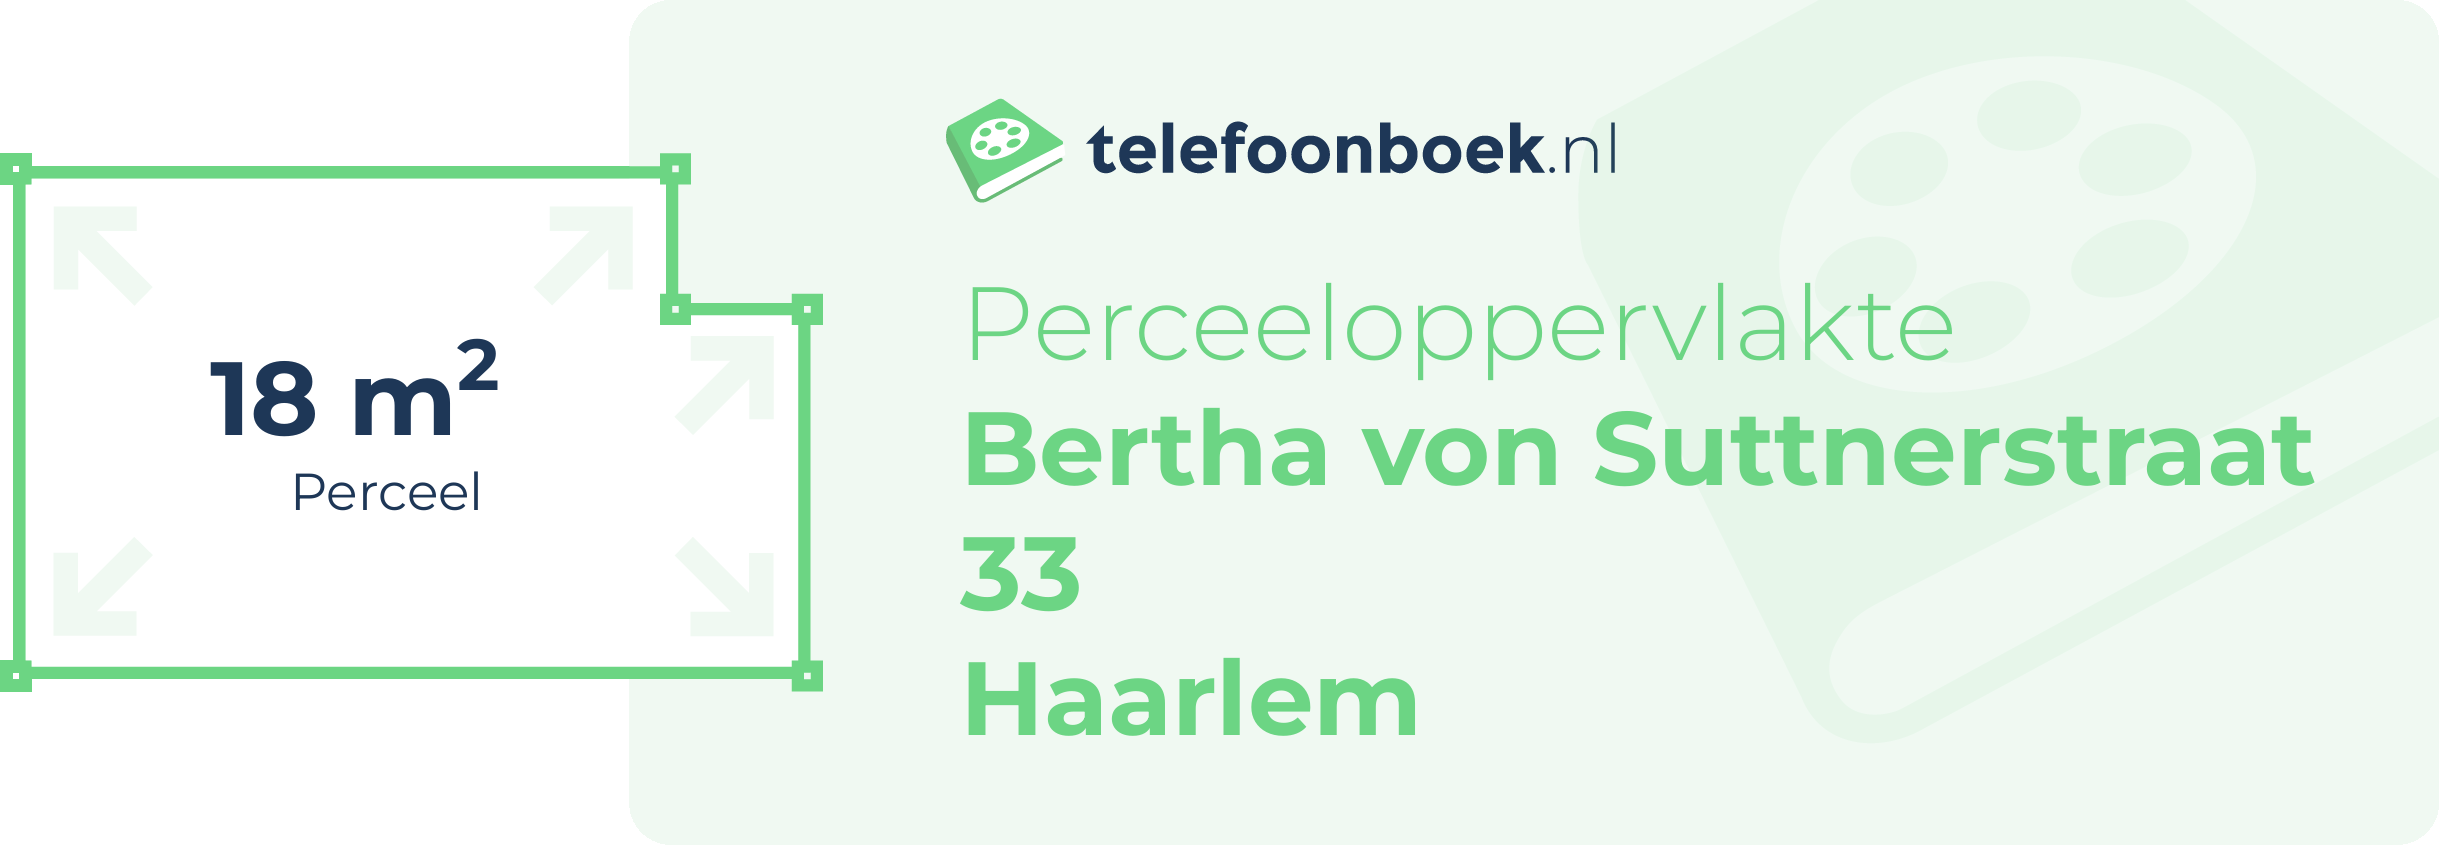 Perceeloppervlakte Bertha Von Suttnerstraat 33 Haarlem